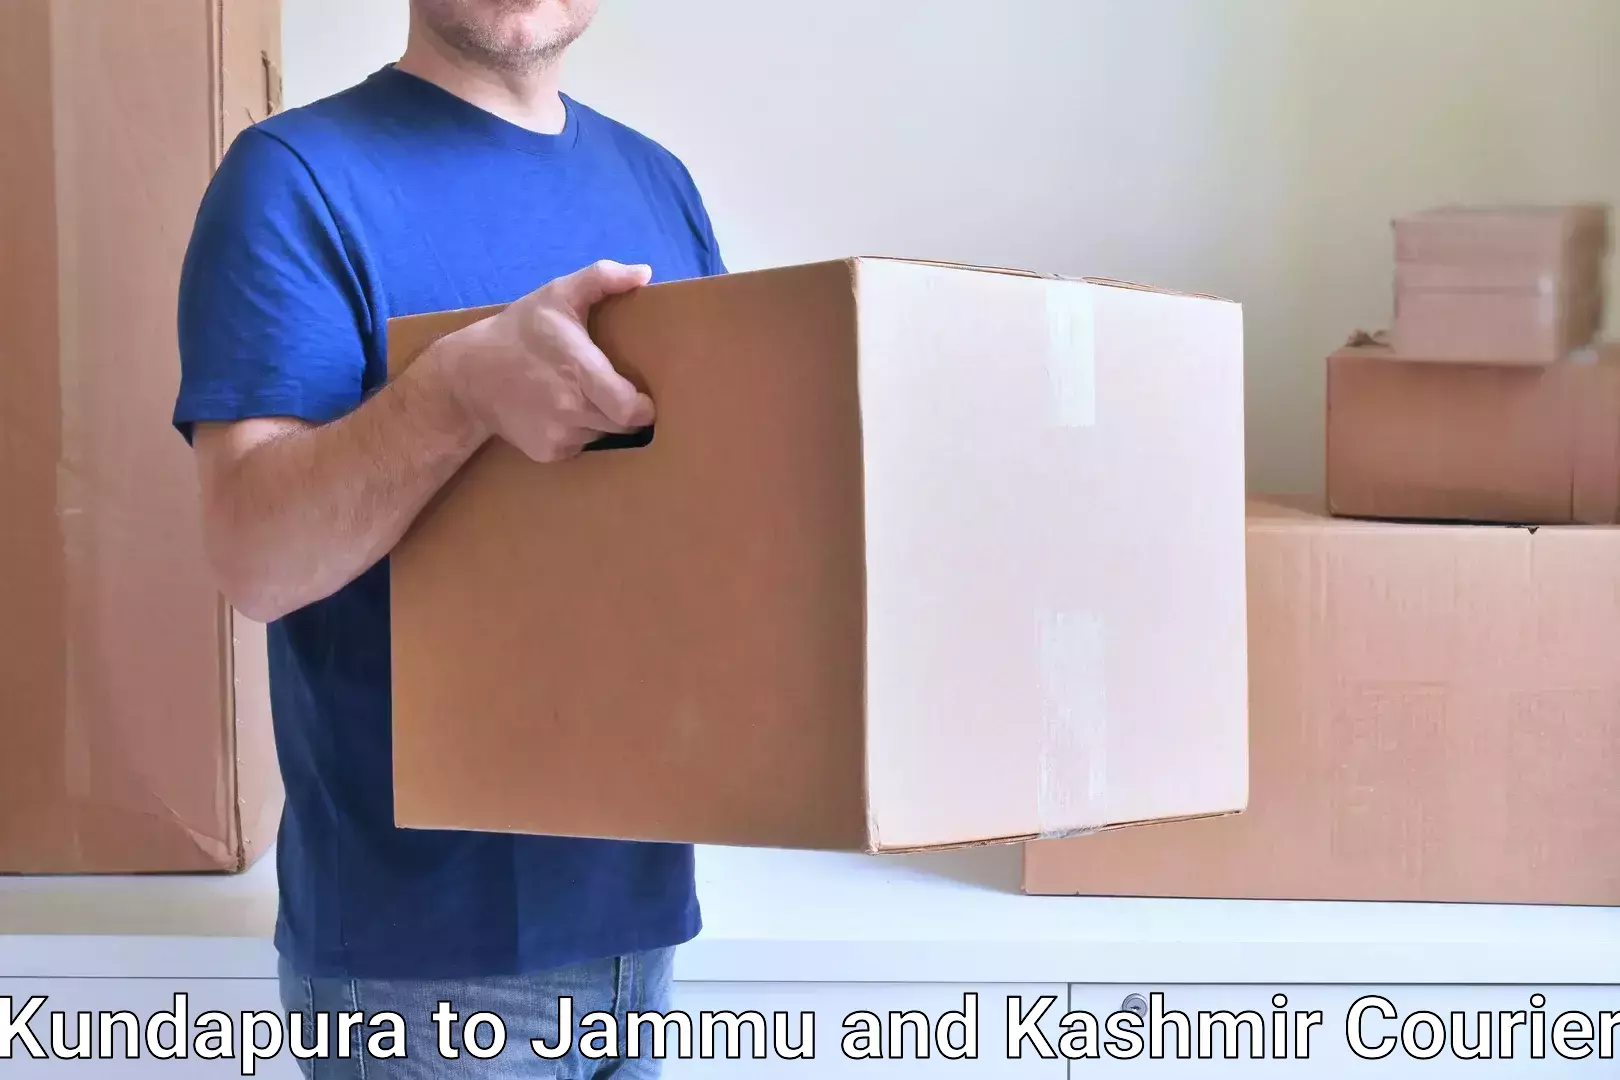 Door-to-door freight service Kundapura to Jammu and Kashmir